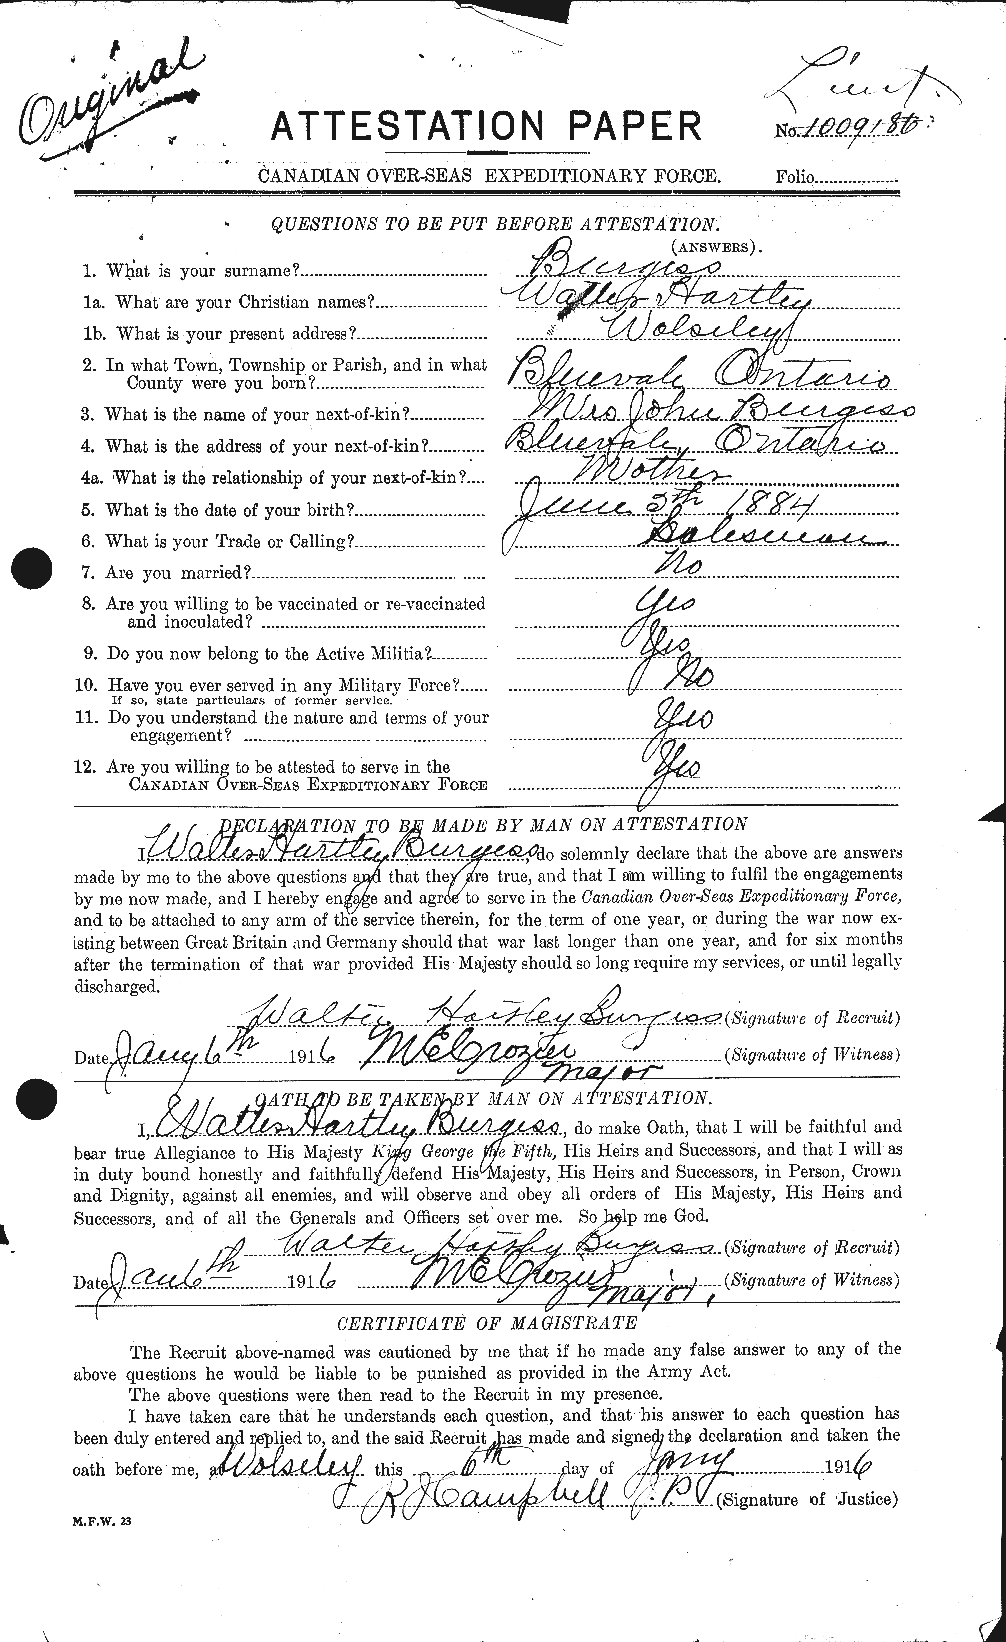 Dossiers du Personnel de la Première Guerre mondiale - CEC 272226a